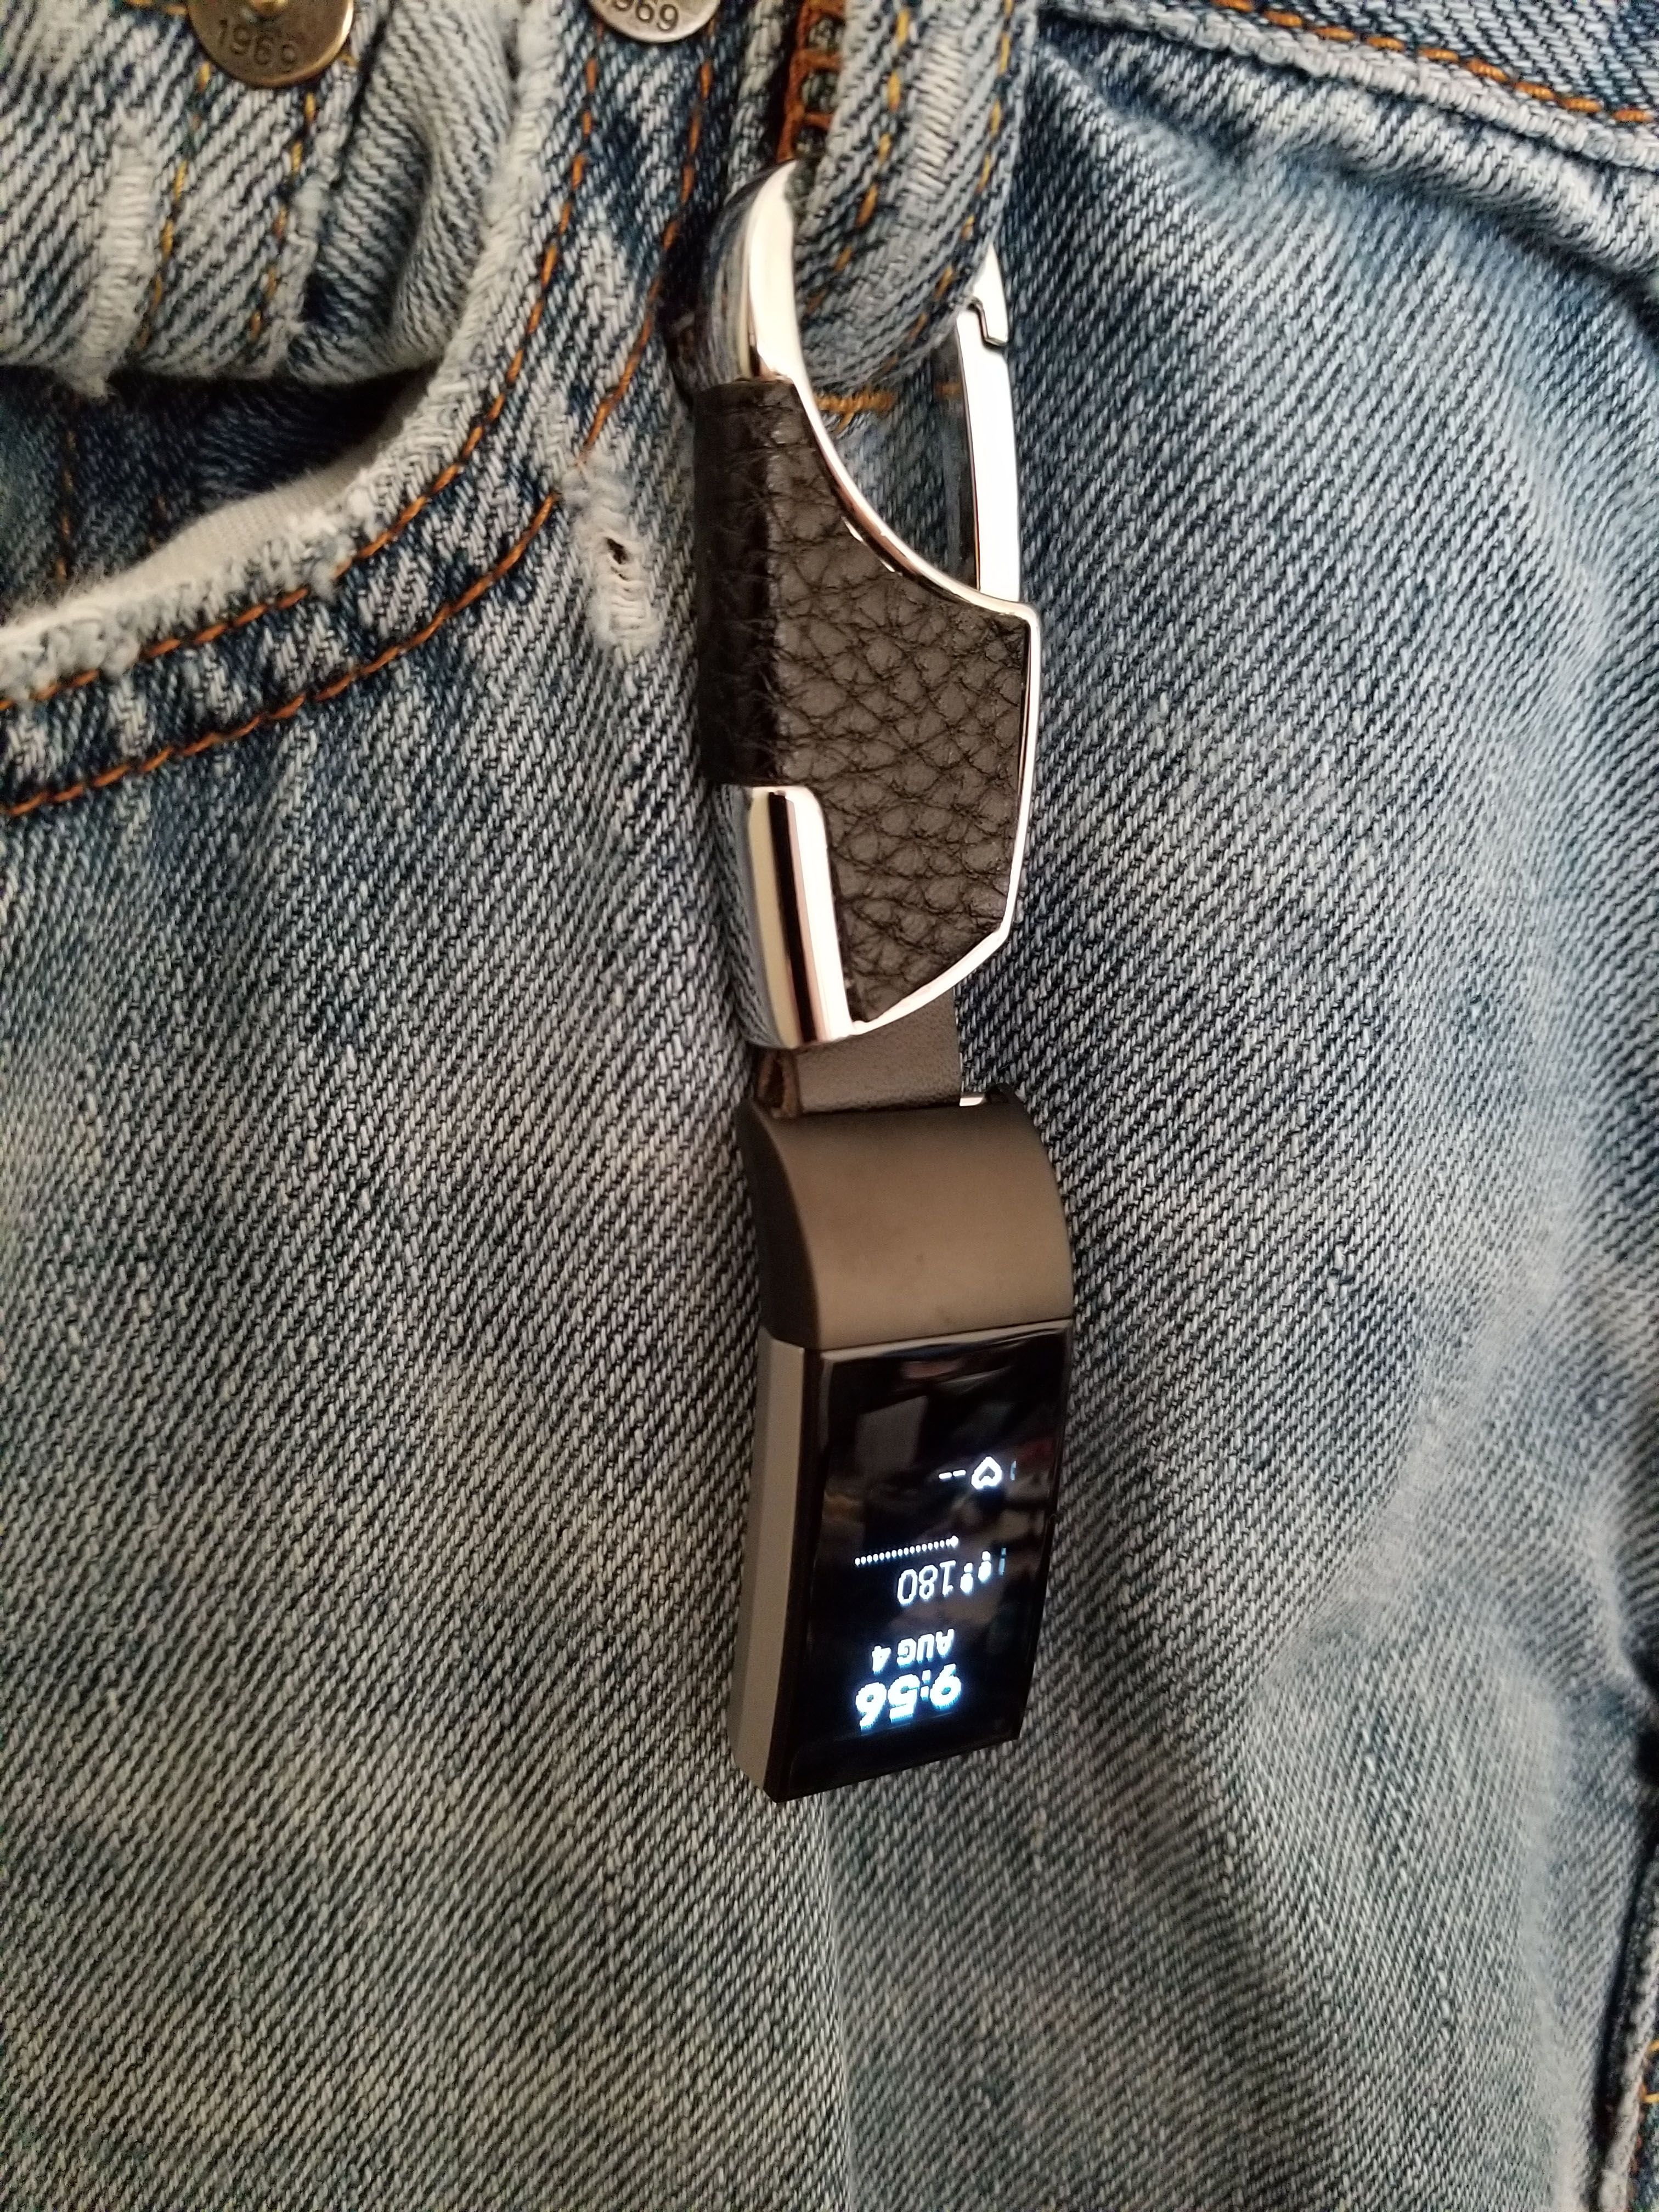 fitbit blaze belt clip